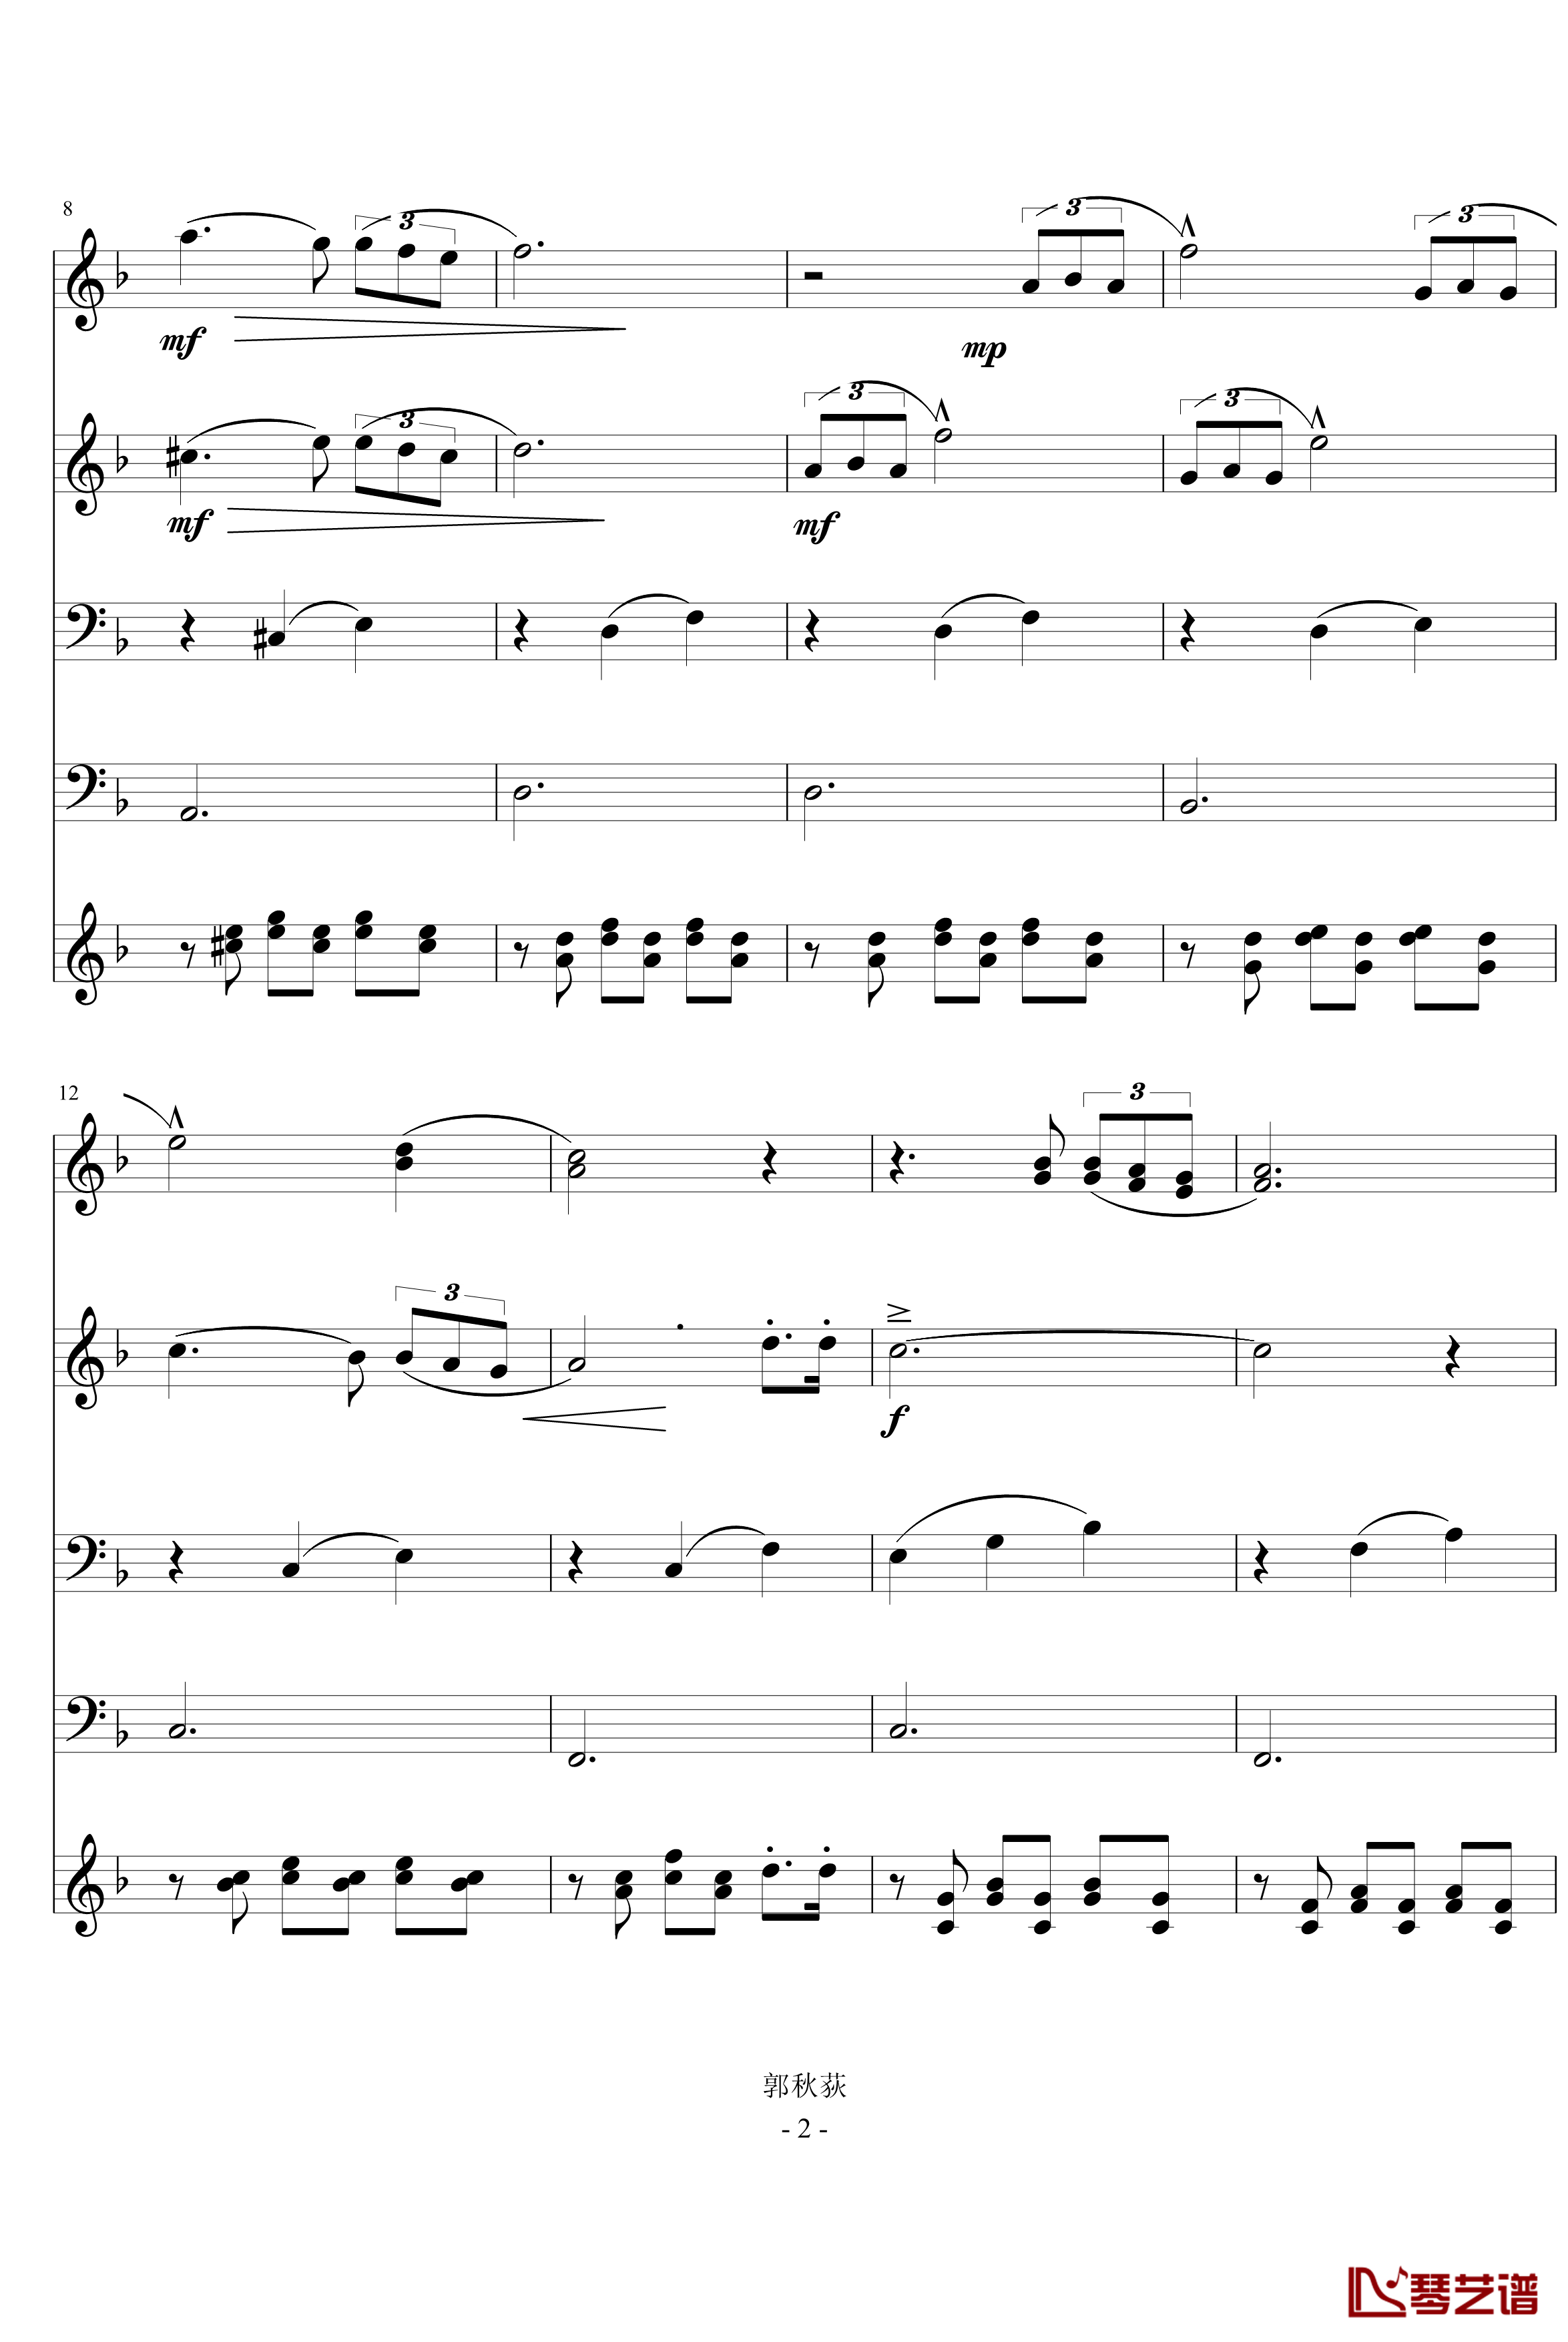 舒伯特小夜曲钢琴谱-管铉乐队版-舒伯特2